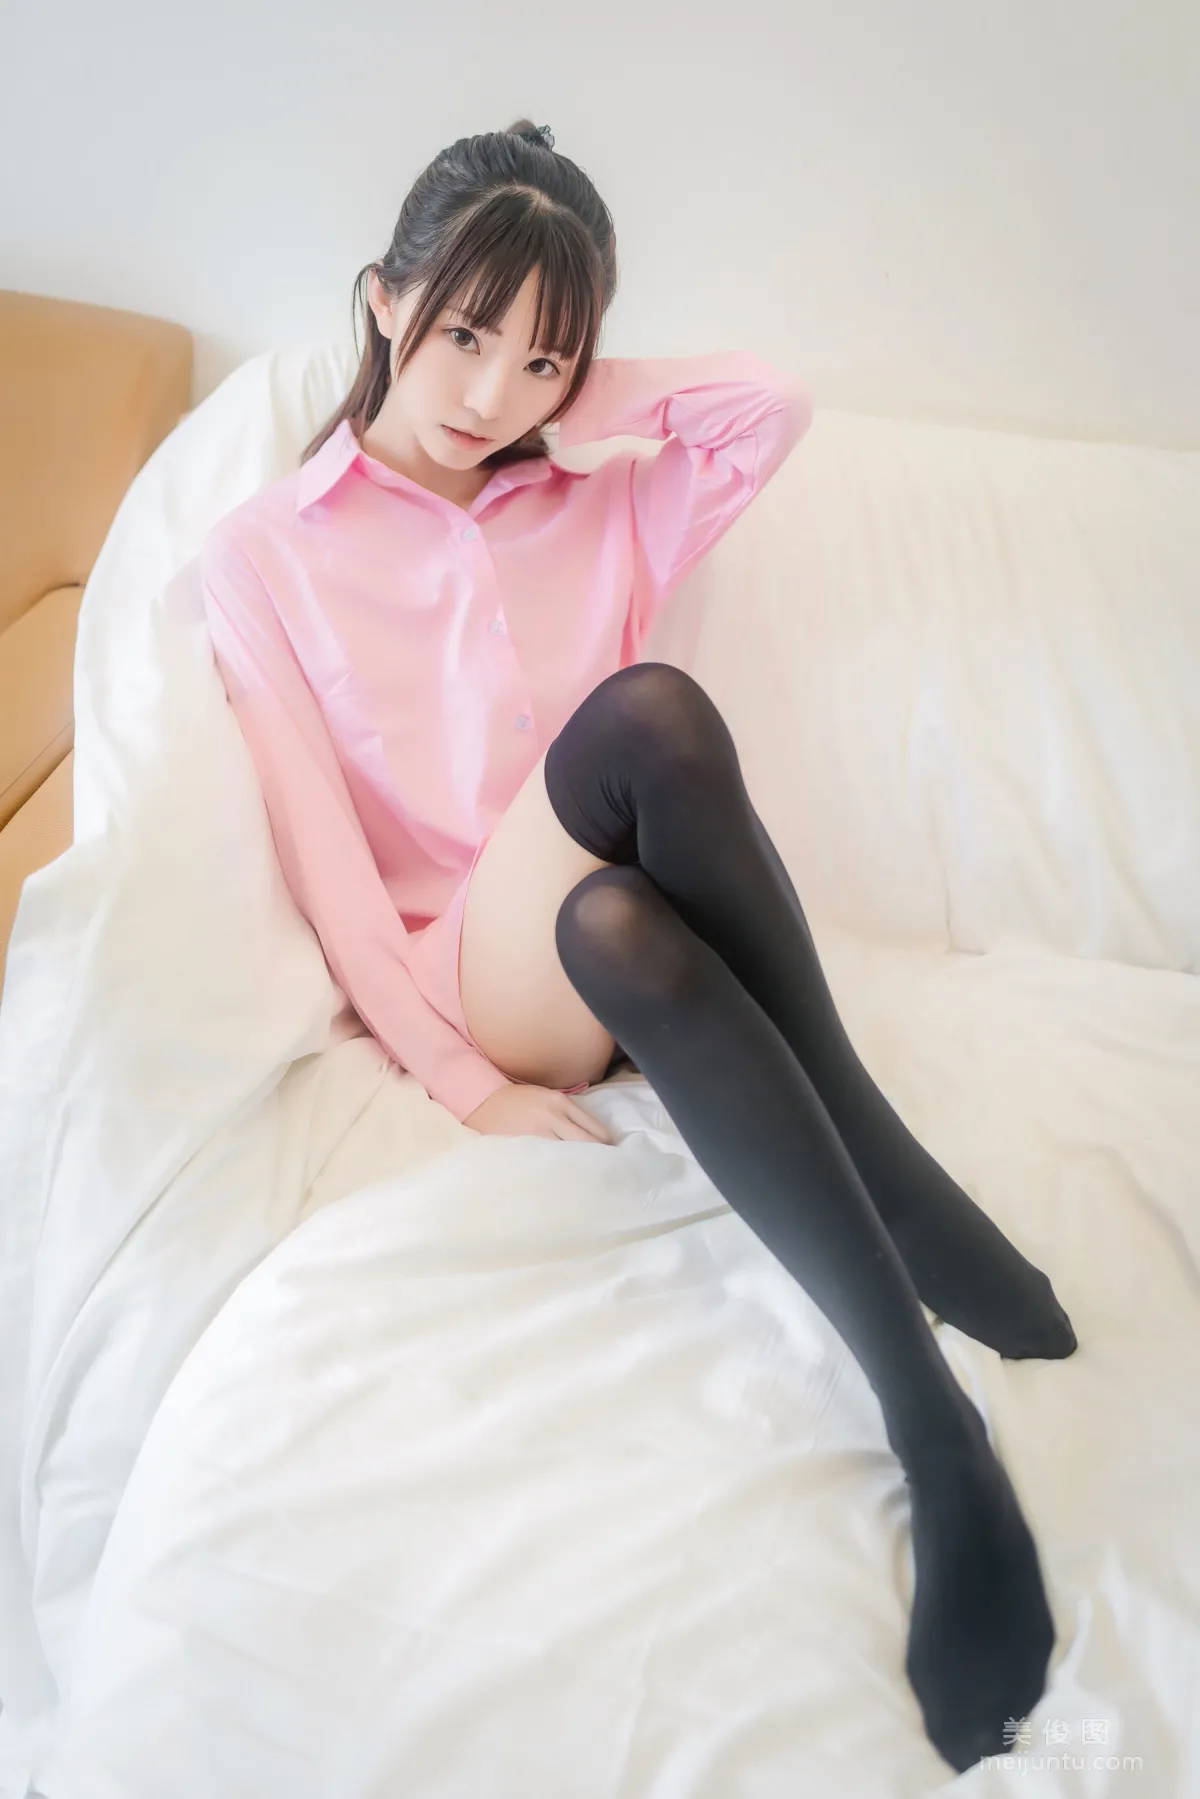 [网红COSER] Kitaro_绮太郎 - 粉色衬衫 写真集34